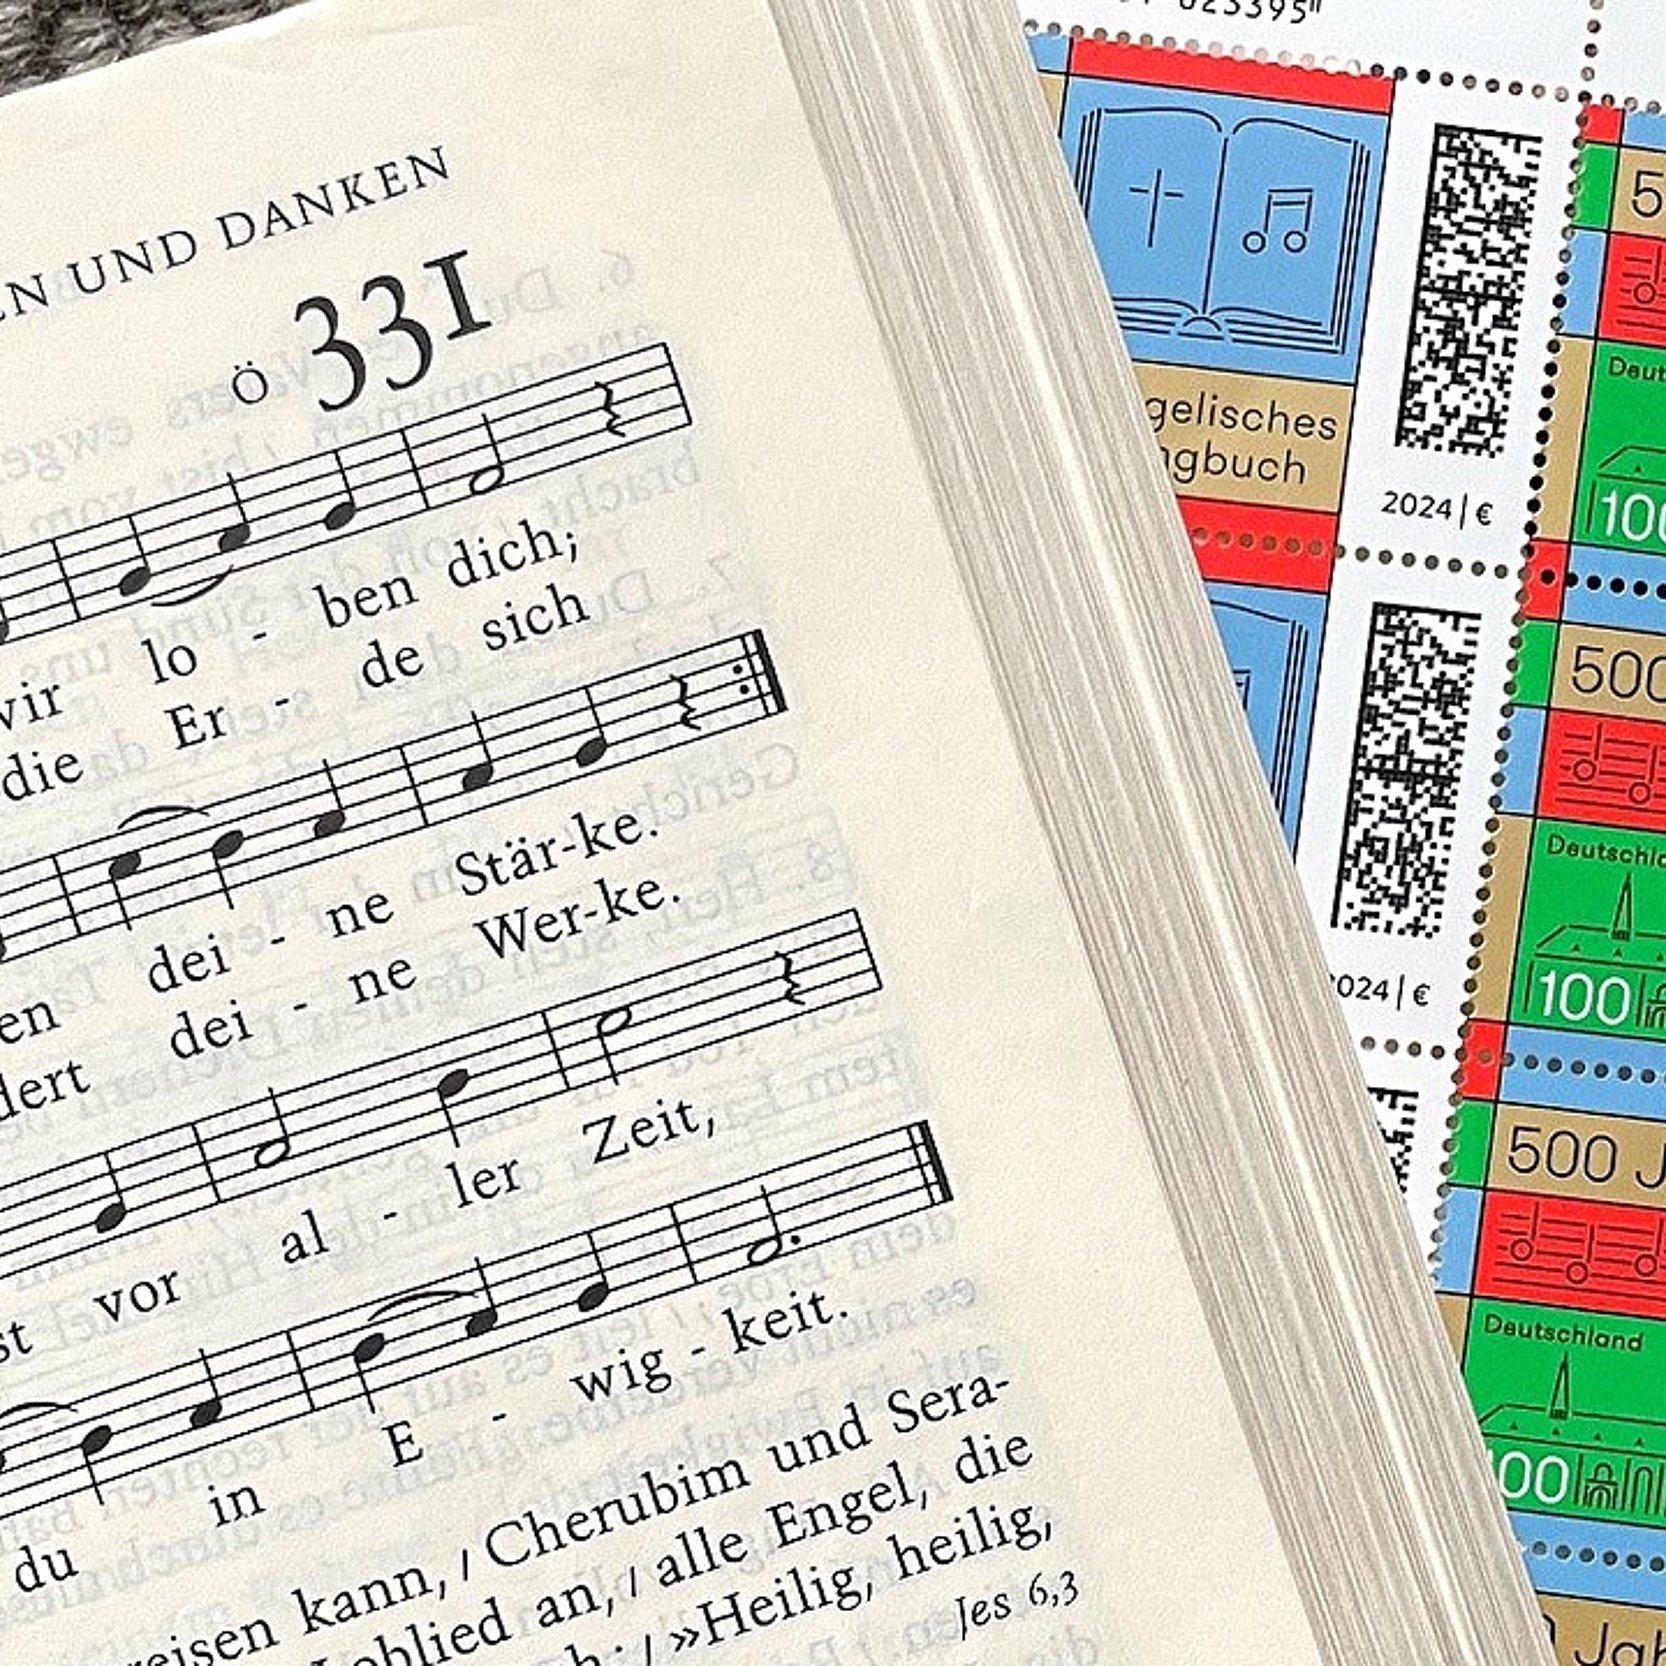 Gesangbuch neben Briefmarken